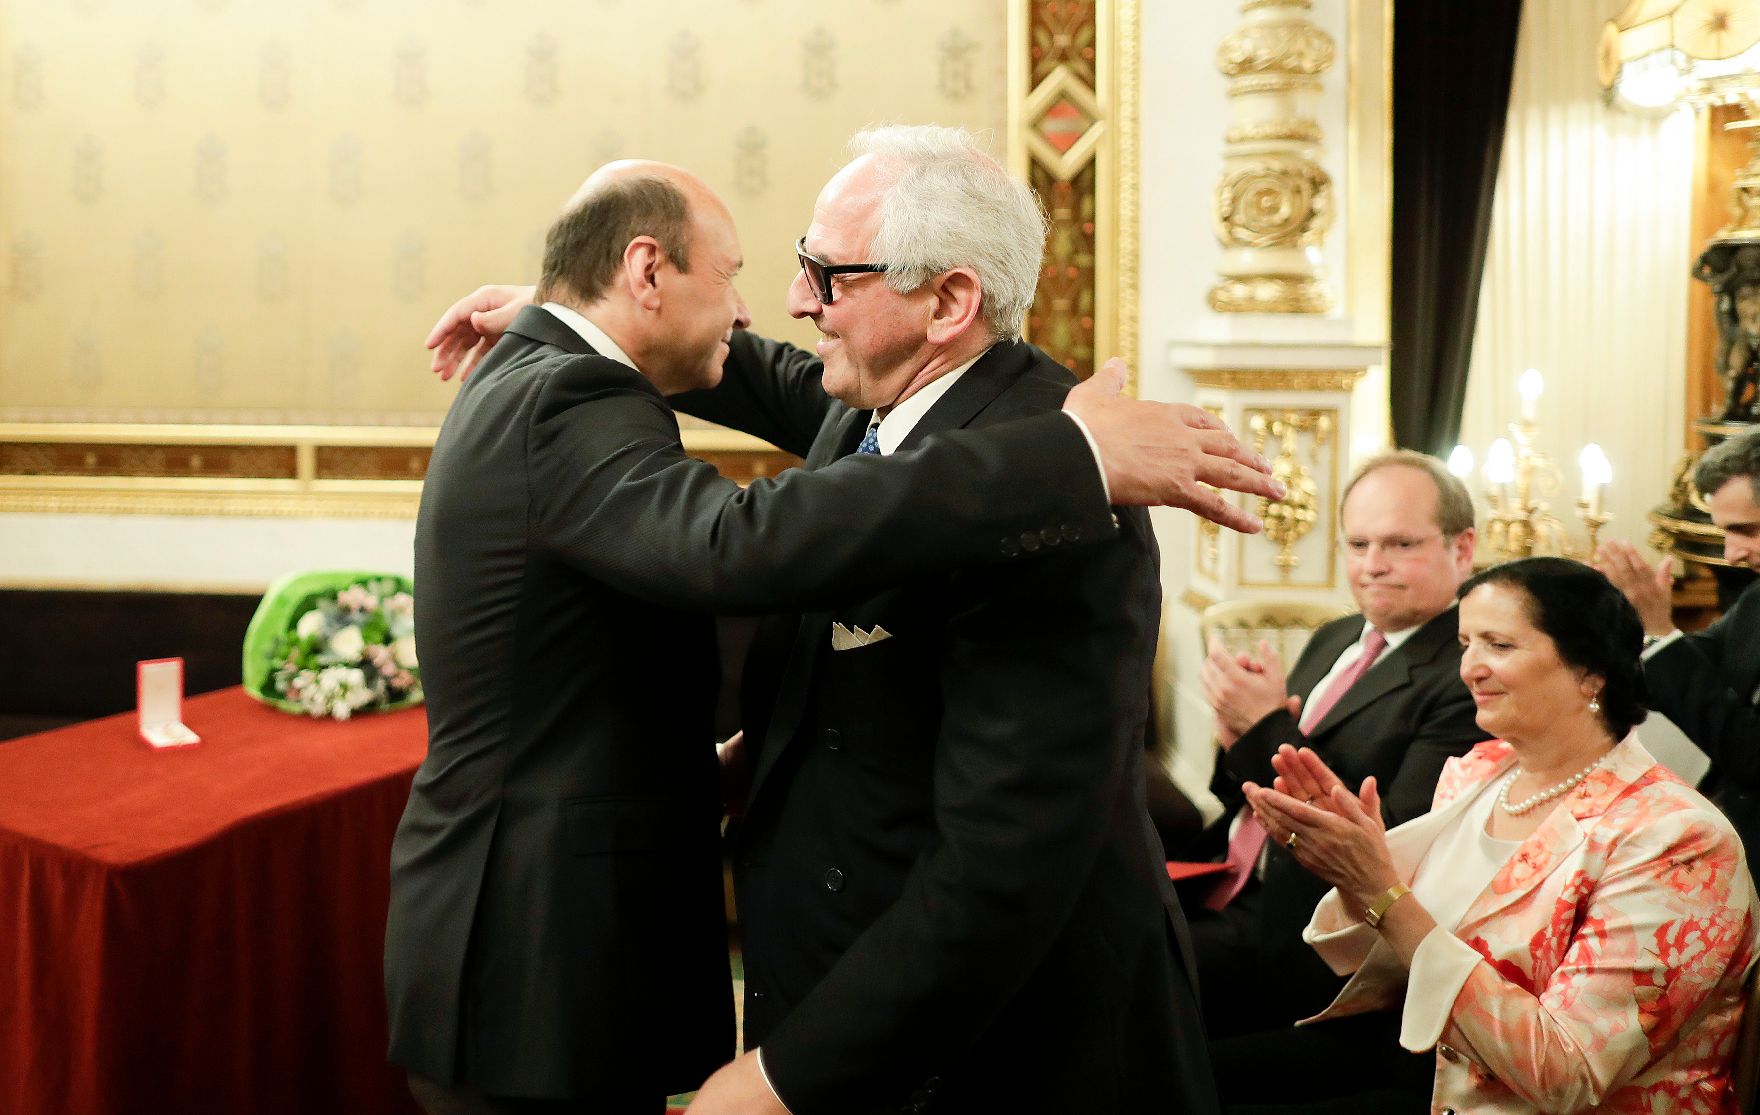 Am 21. Juni 2018 fand die Überreichung des Goldenen Ehrenzeichens für Verdienste um die Republik Österreich an Aki Nuredini (r.) statt. Im Bild mit dem Direktor der Staatsoper und Laudator Dominique Meyer (l.).